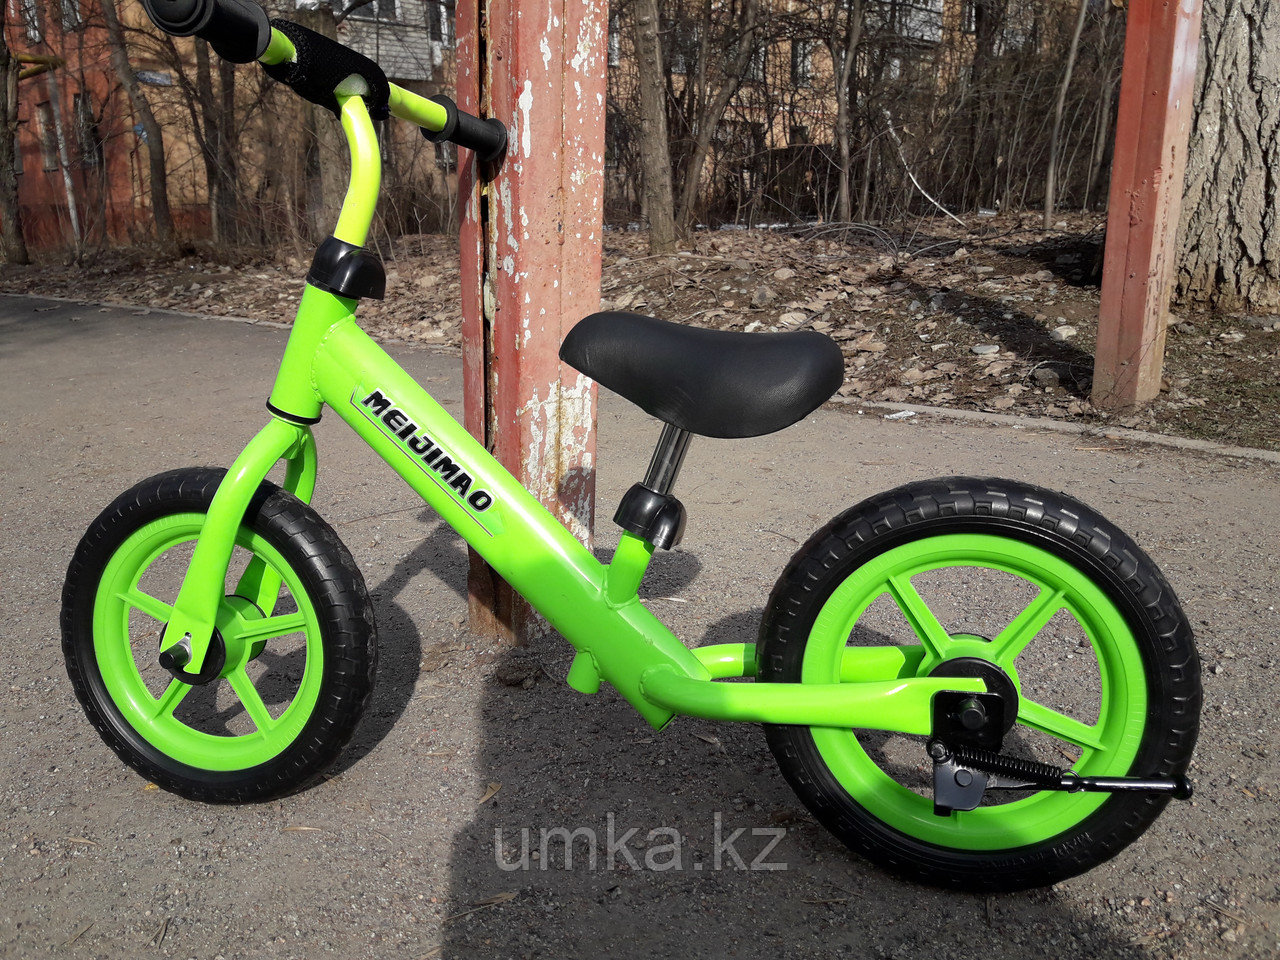 Велосипед без педалей | Купить в Казахстане